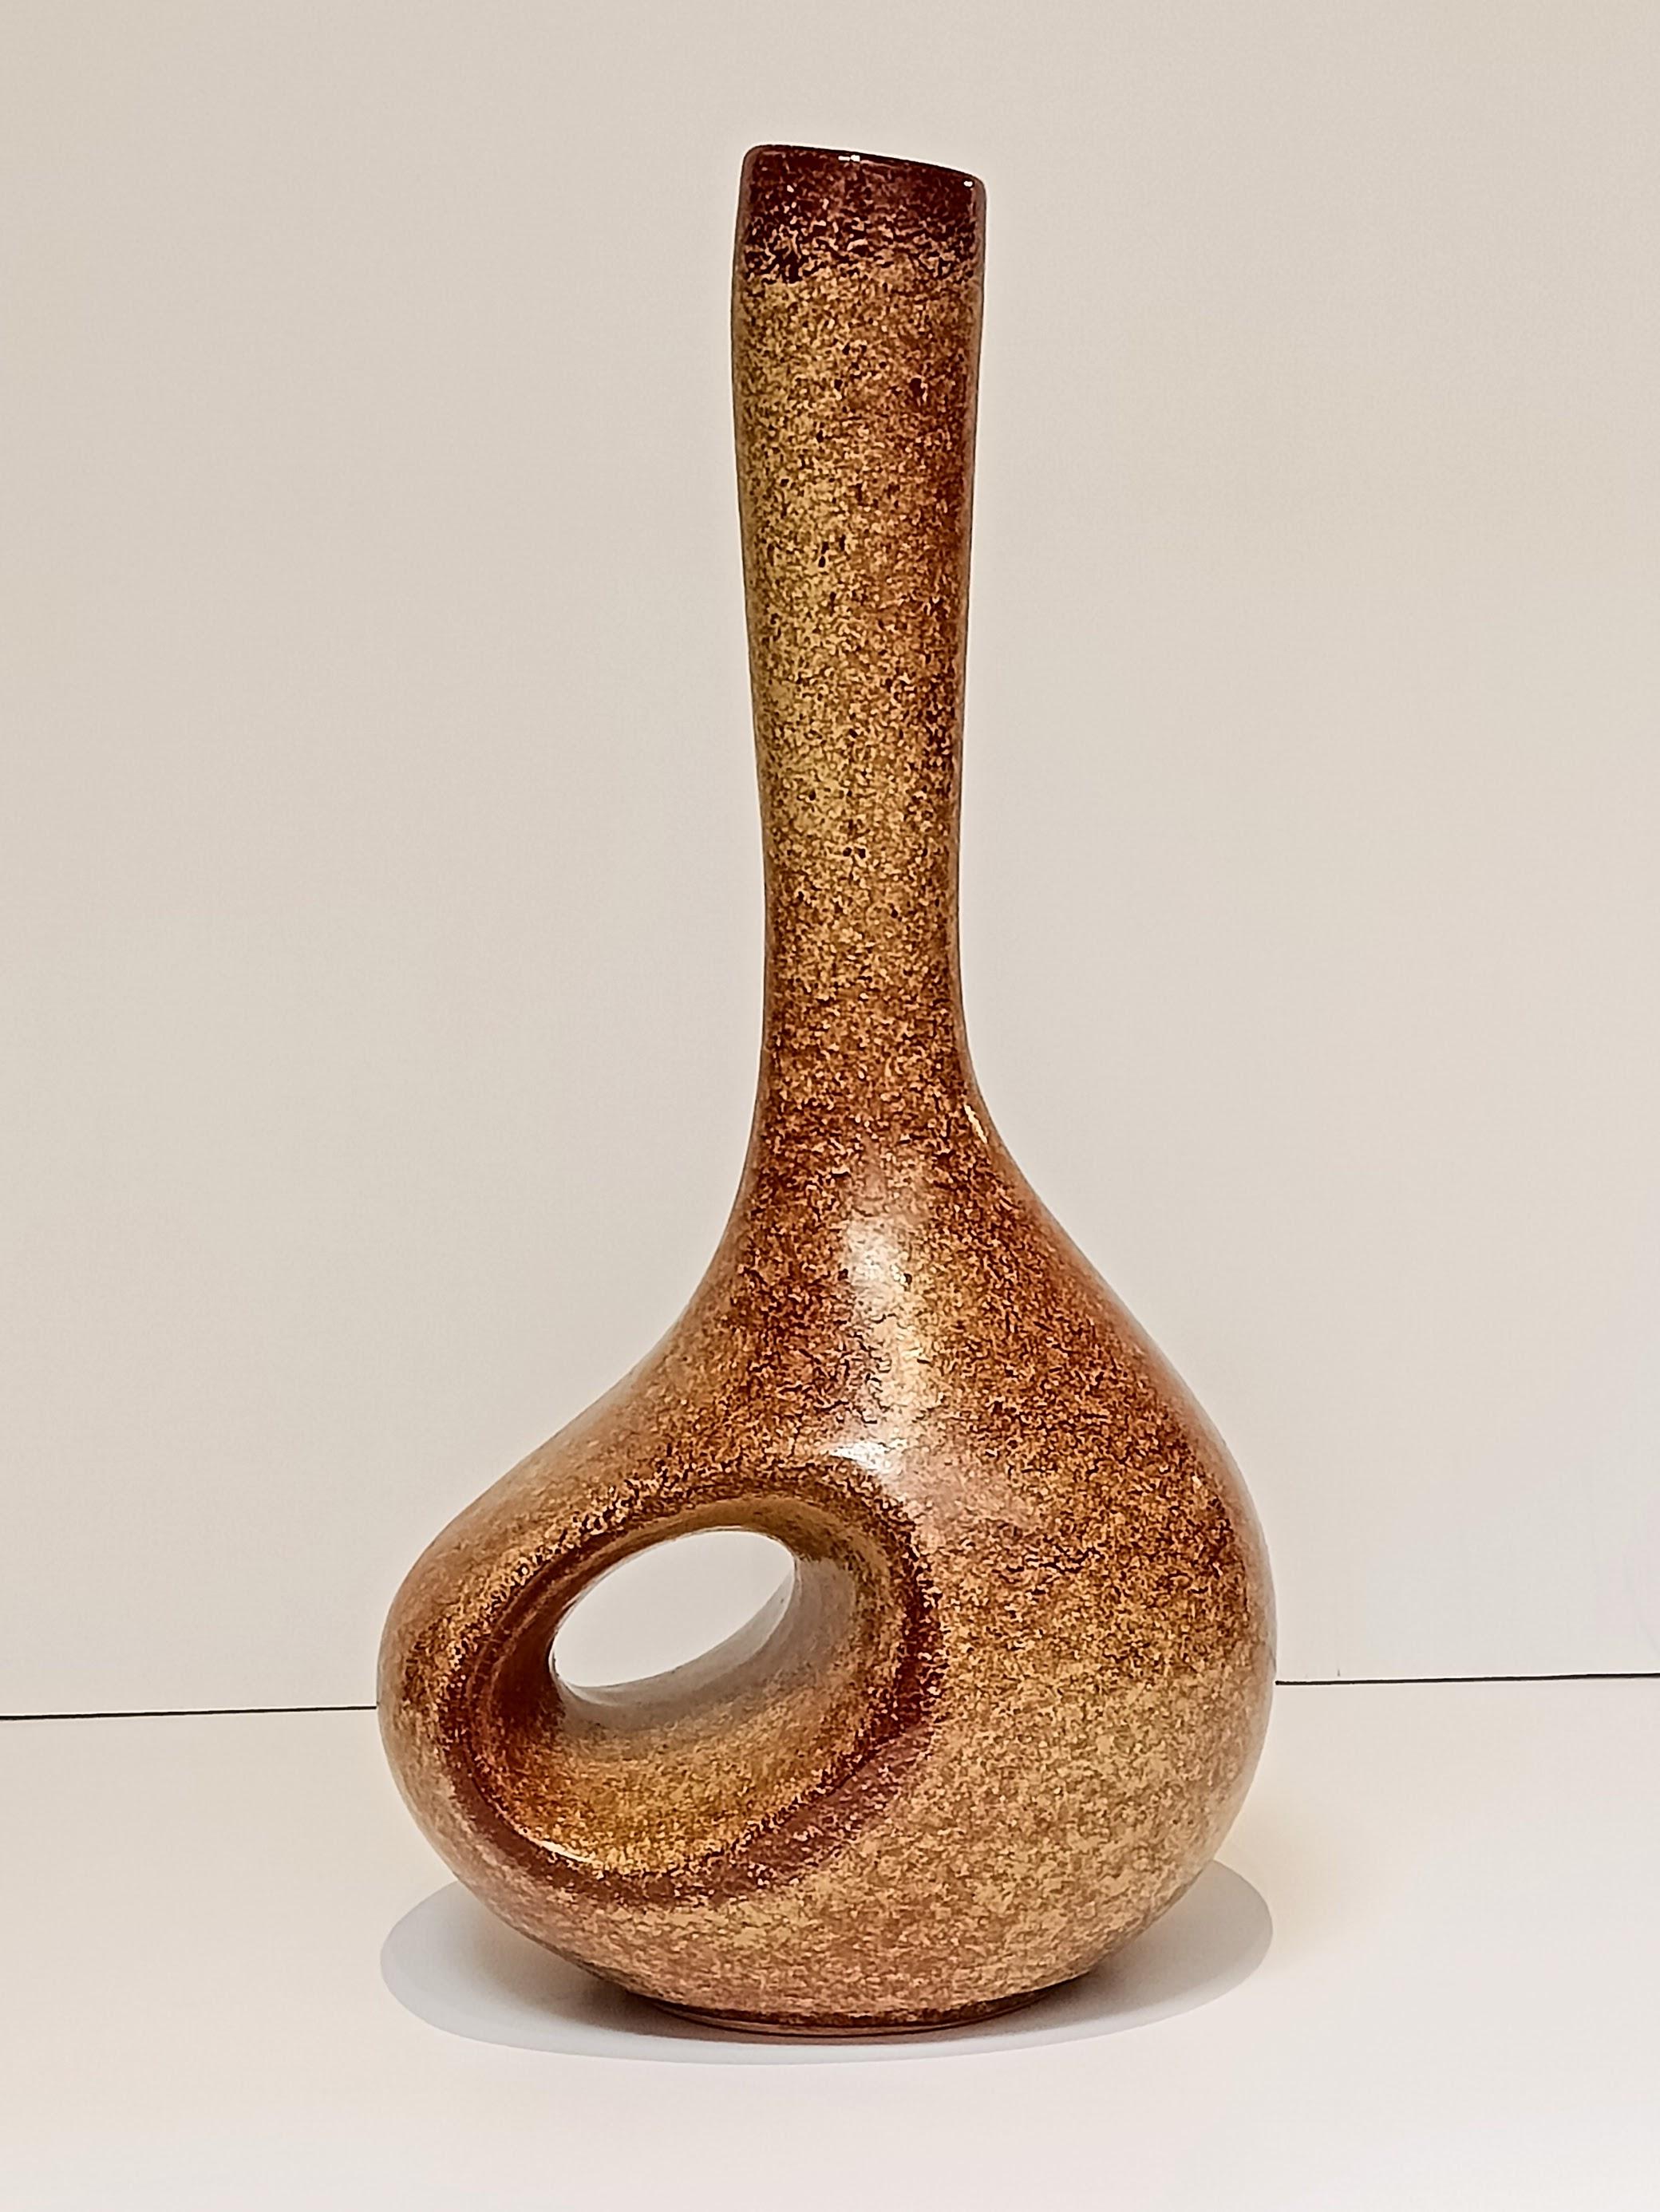 Skulpturale Keramikvase im Stil des Mid Century Modern von Roberto Rigon für Bertoncello Ceramiche. Dieses wunderschön gestaltete Stück in der klassischen, gesprenkelten Farbe von Tobacco ist mit einer Codenummer versehen und wurde  handgefertigt in